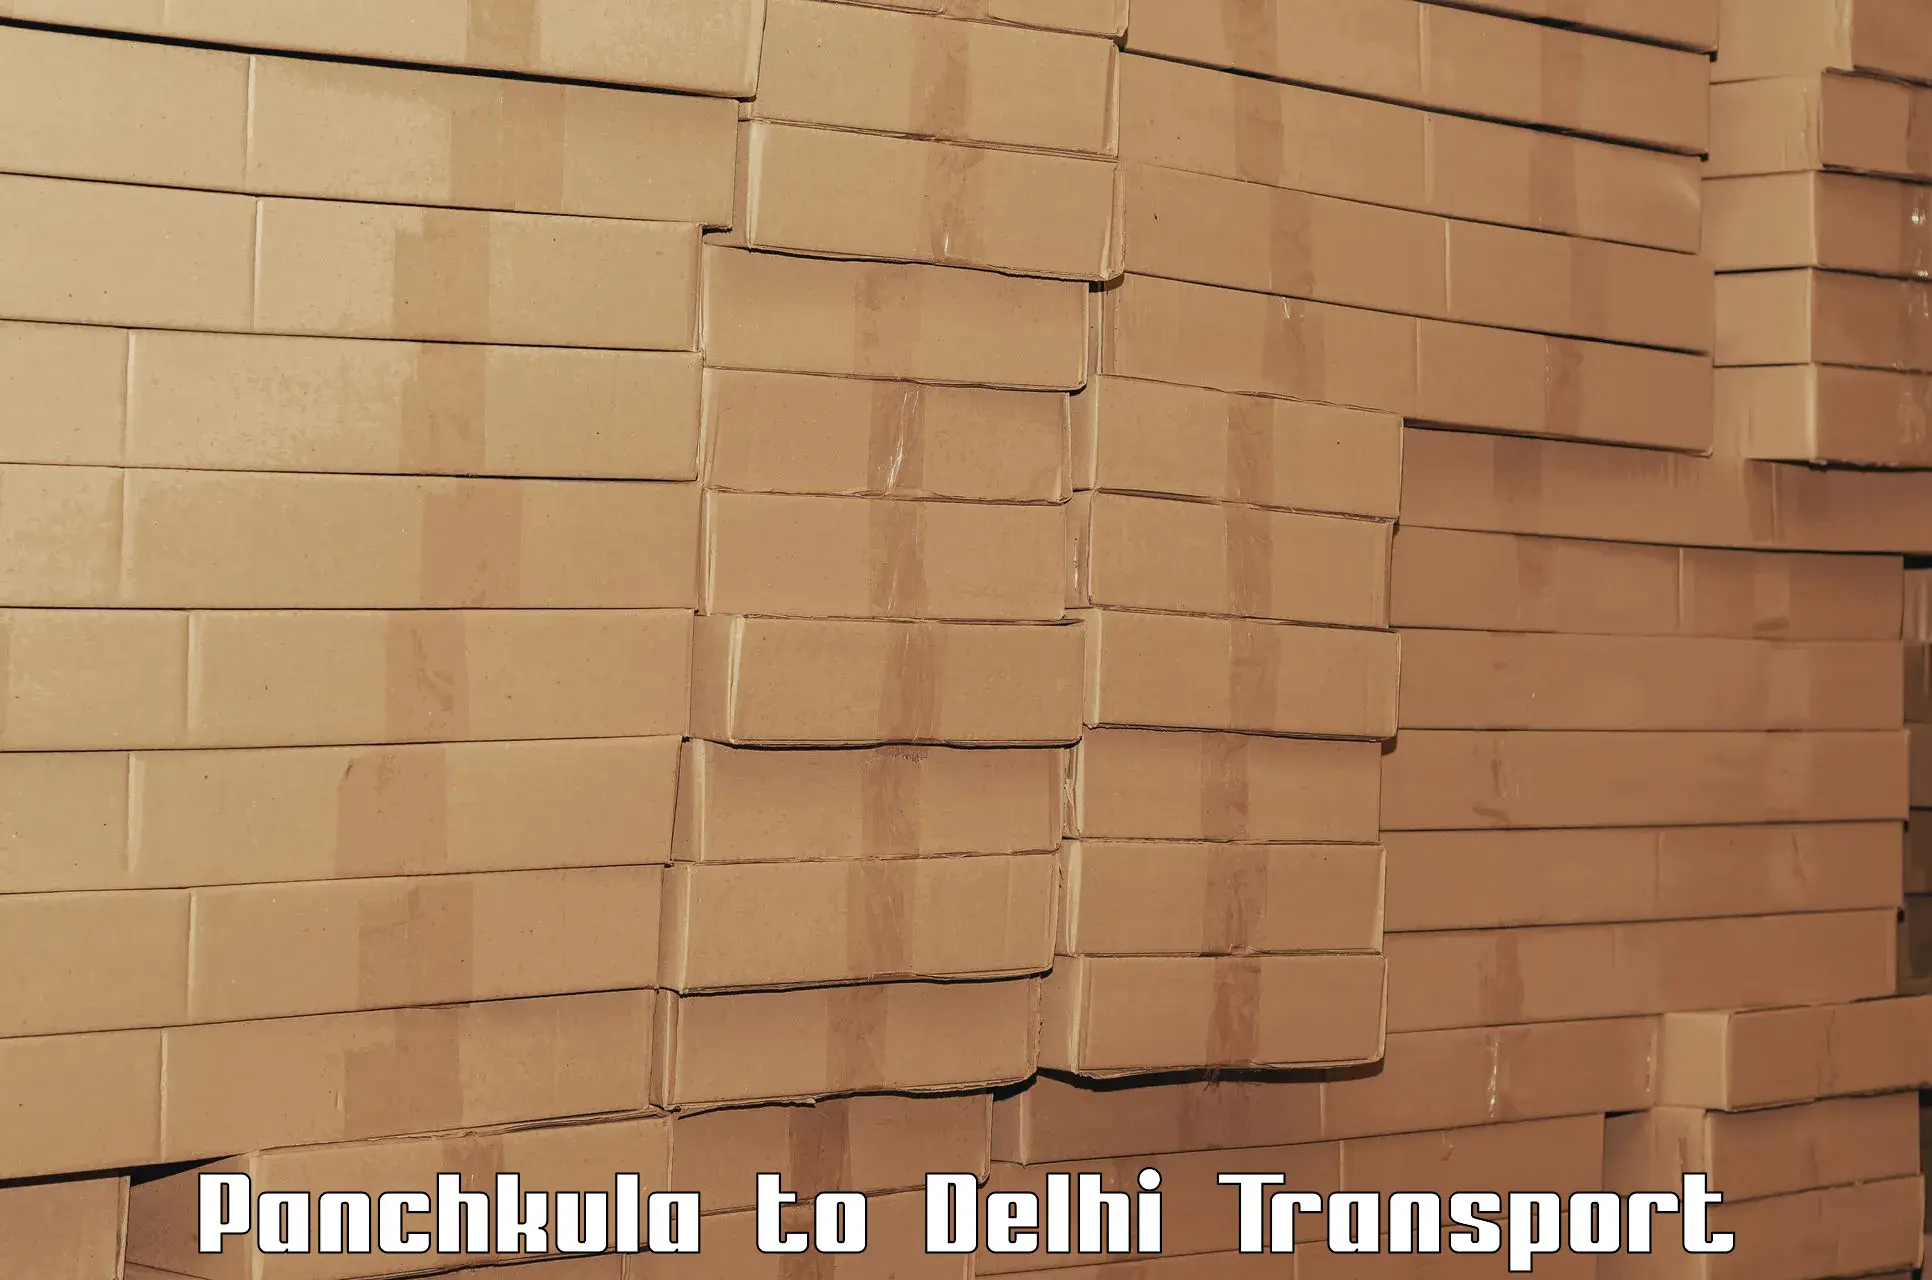 Cycle transportation service Panchkula to Delhi